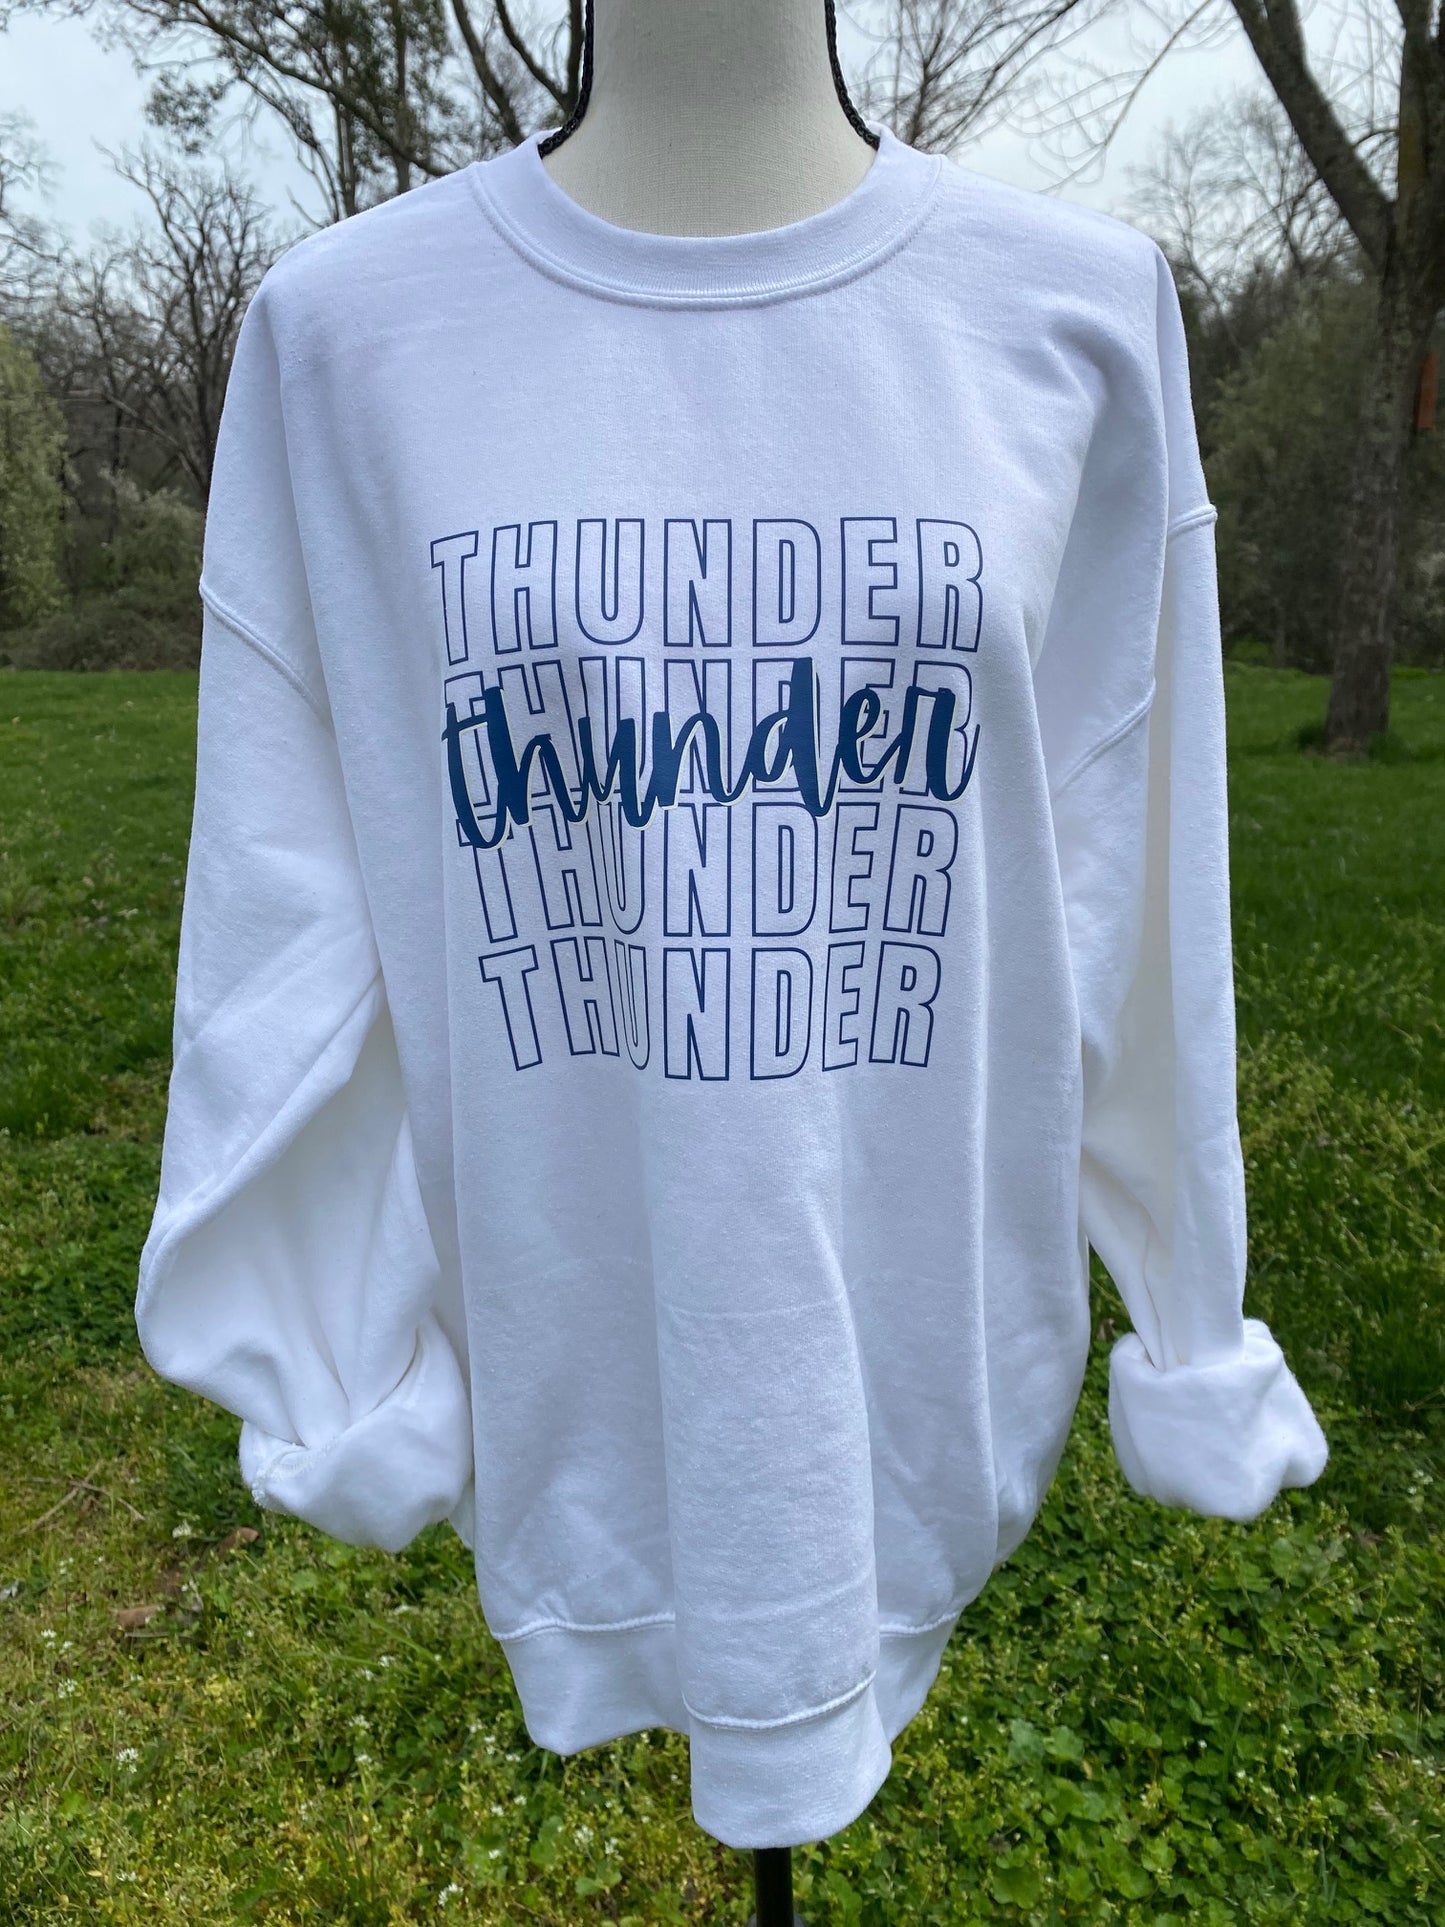 Thunder White Sweatshirt